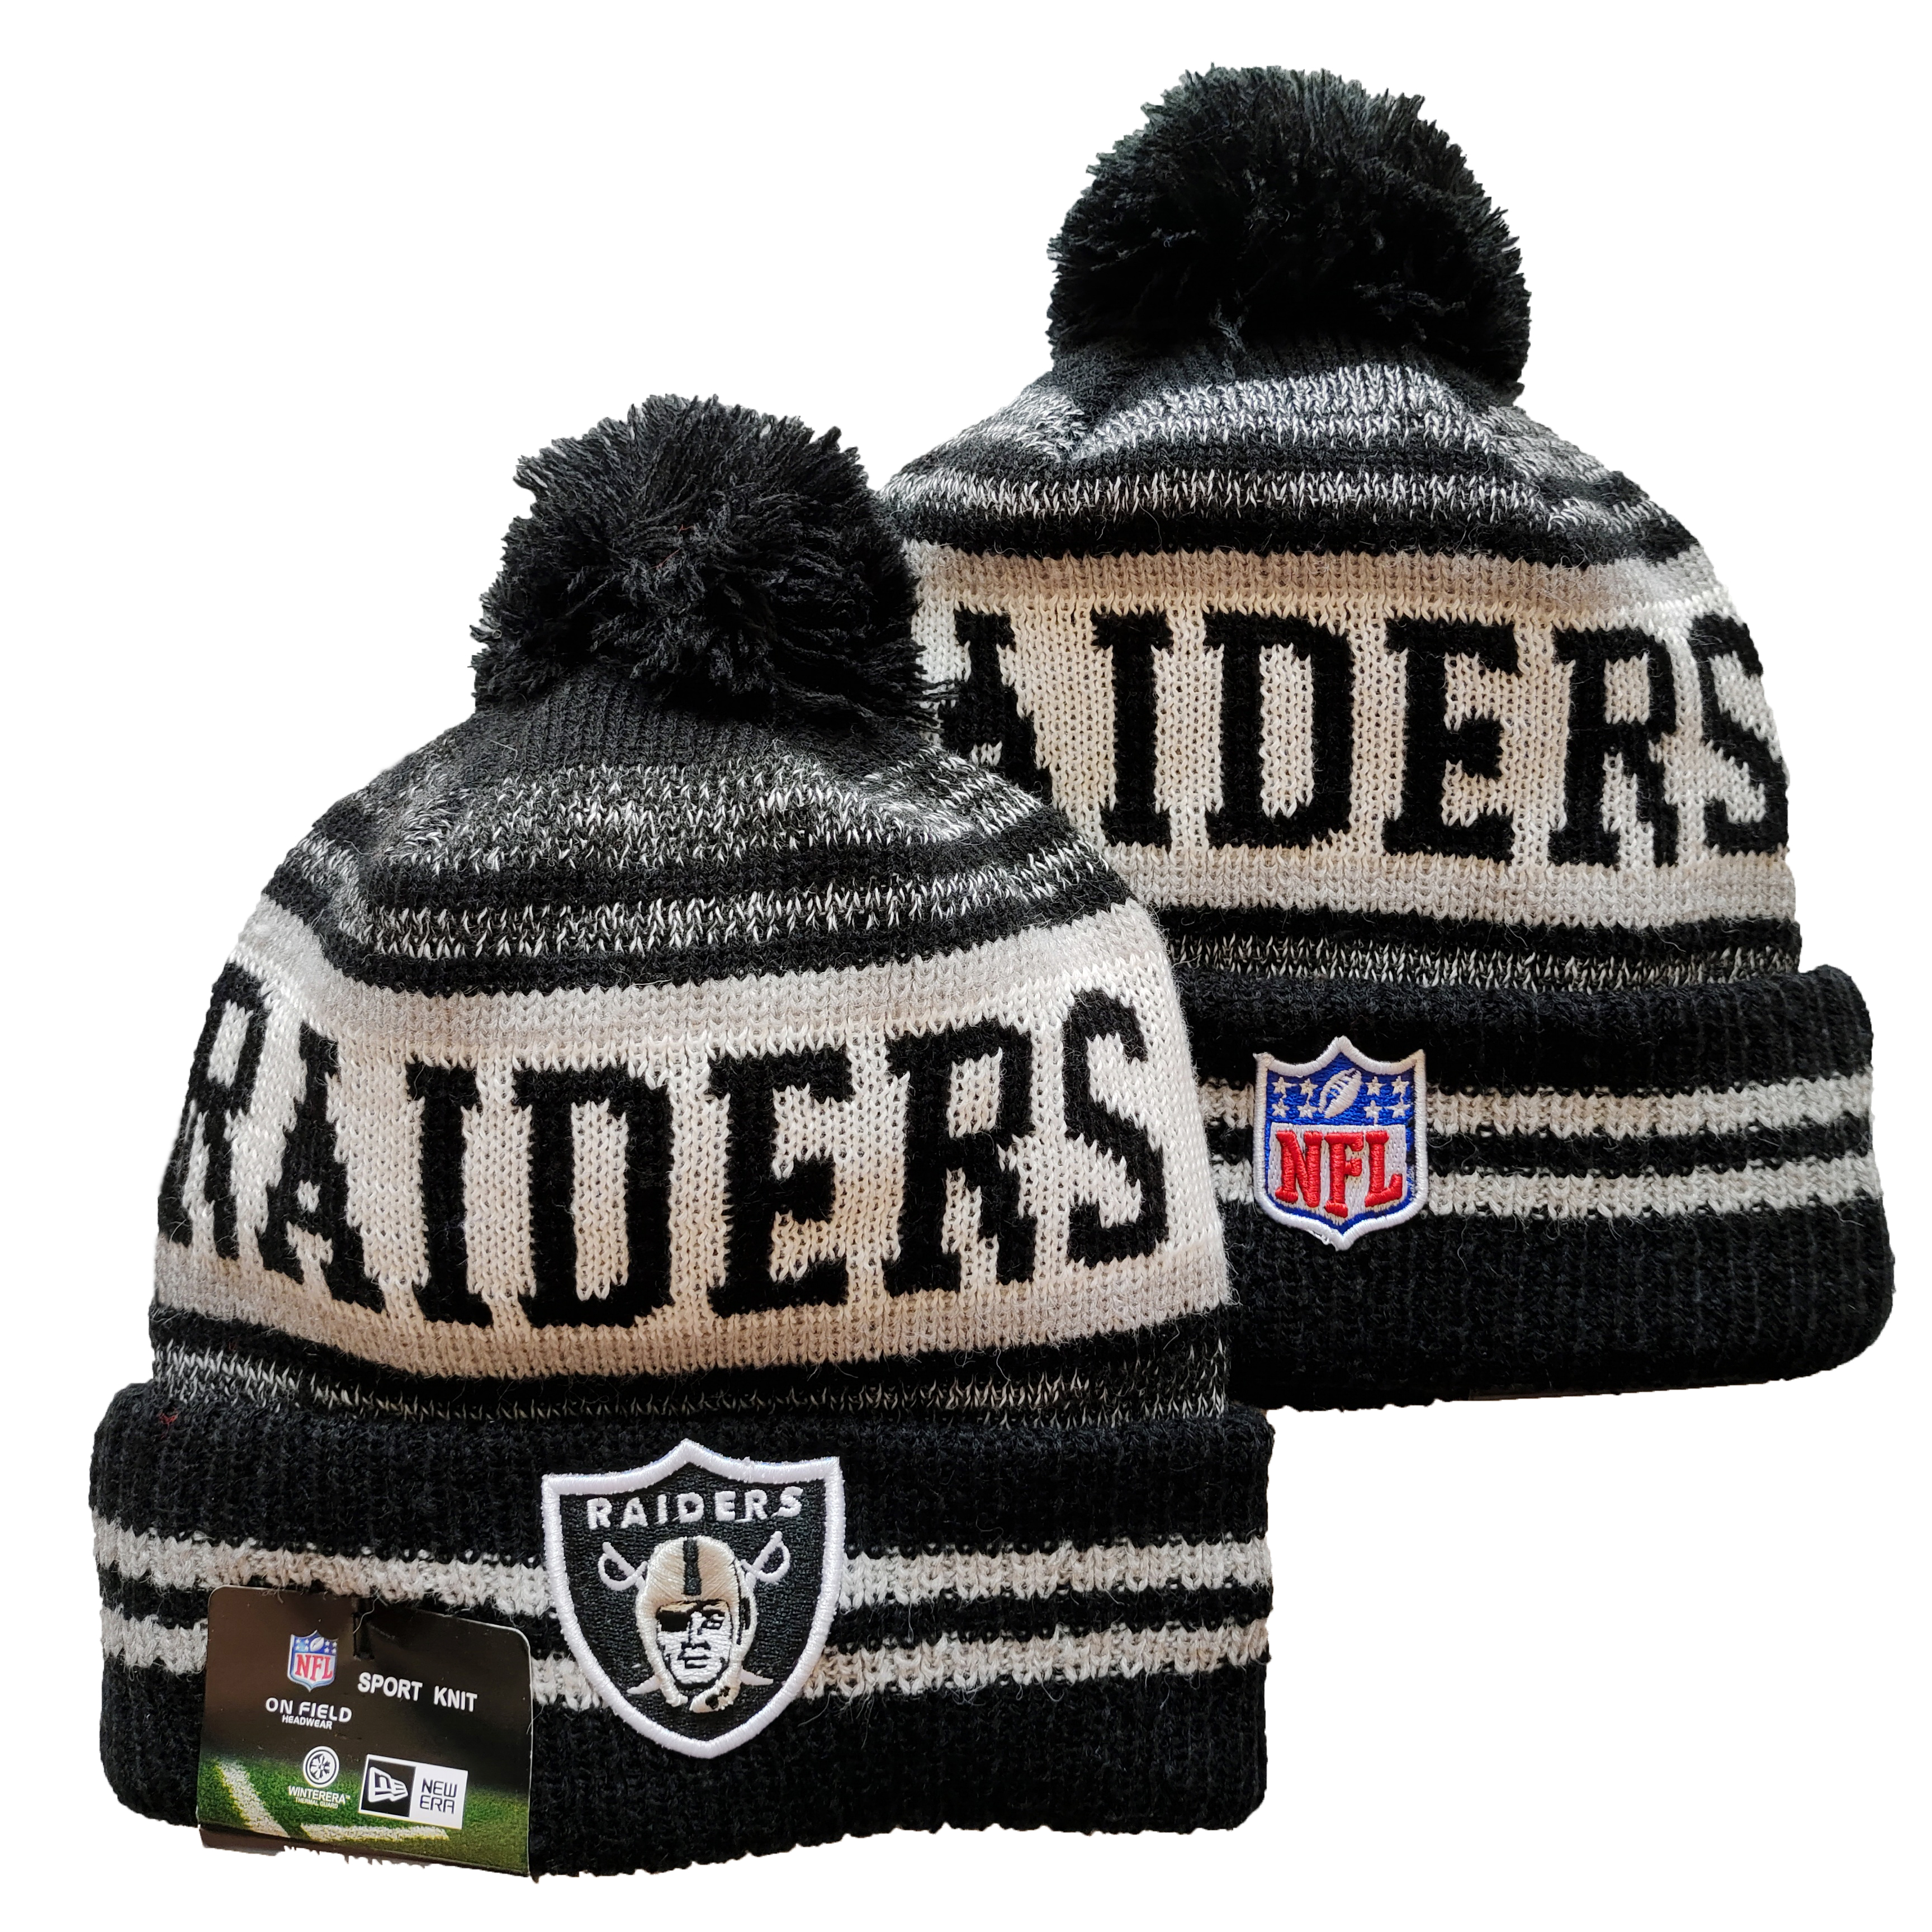 Raiders Team Logo Black and Gray Pom Cuffed Knit Hat YD